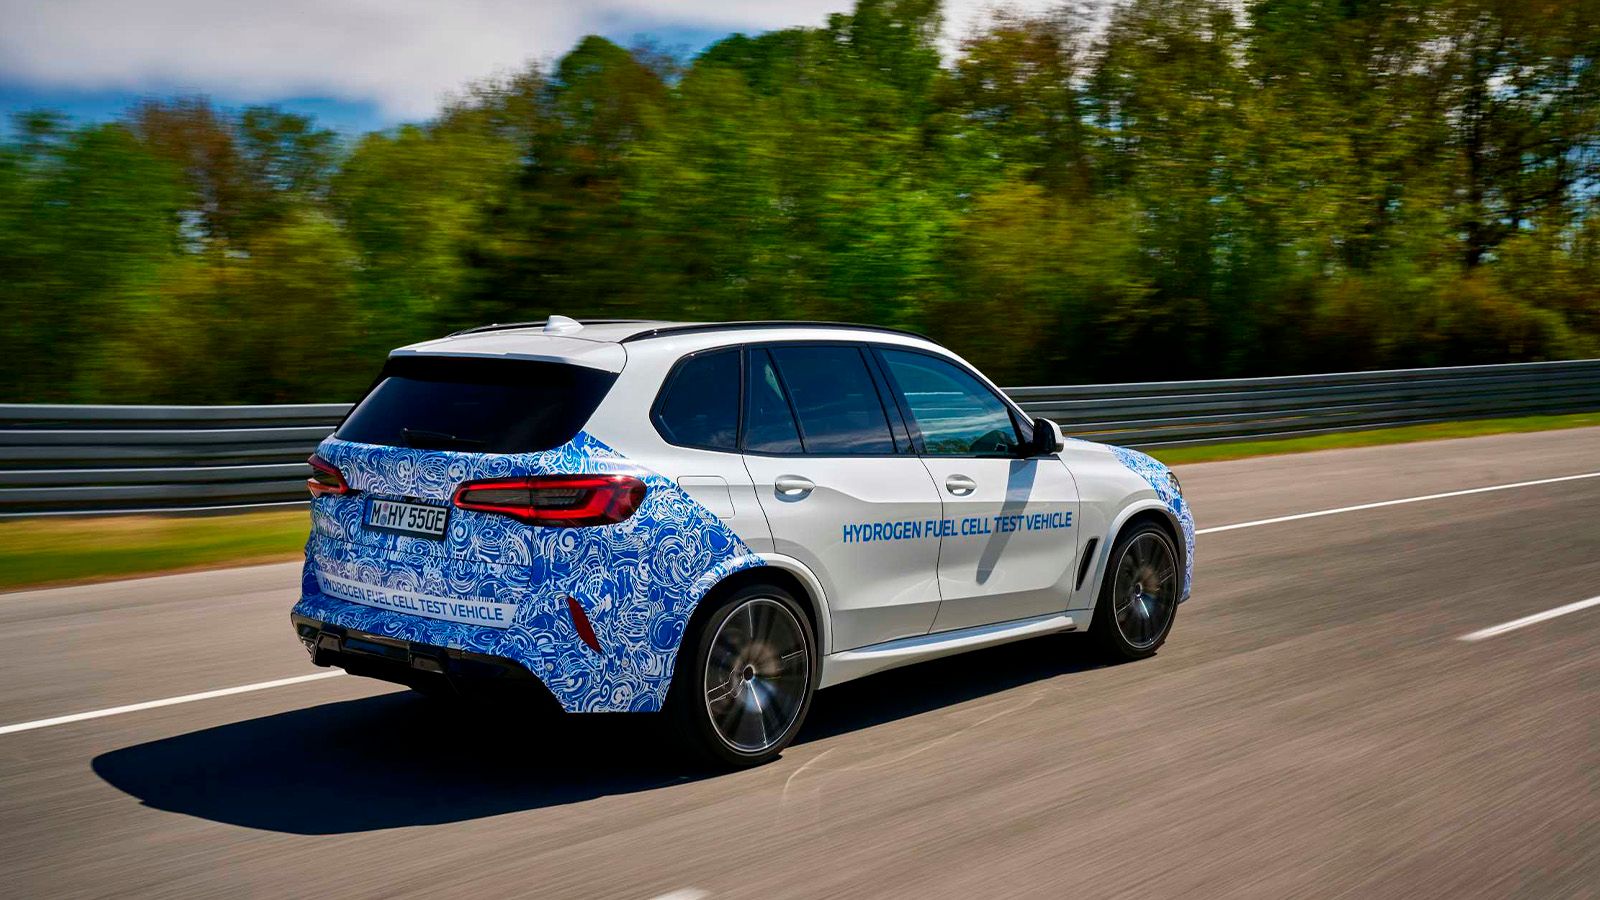 BMW hydrogen SUV test vehicle